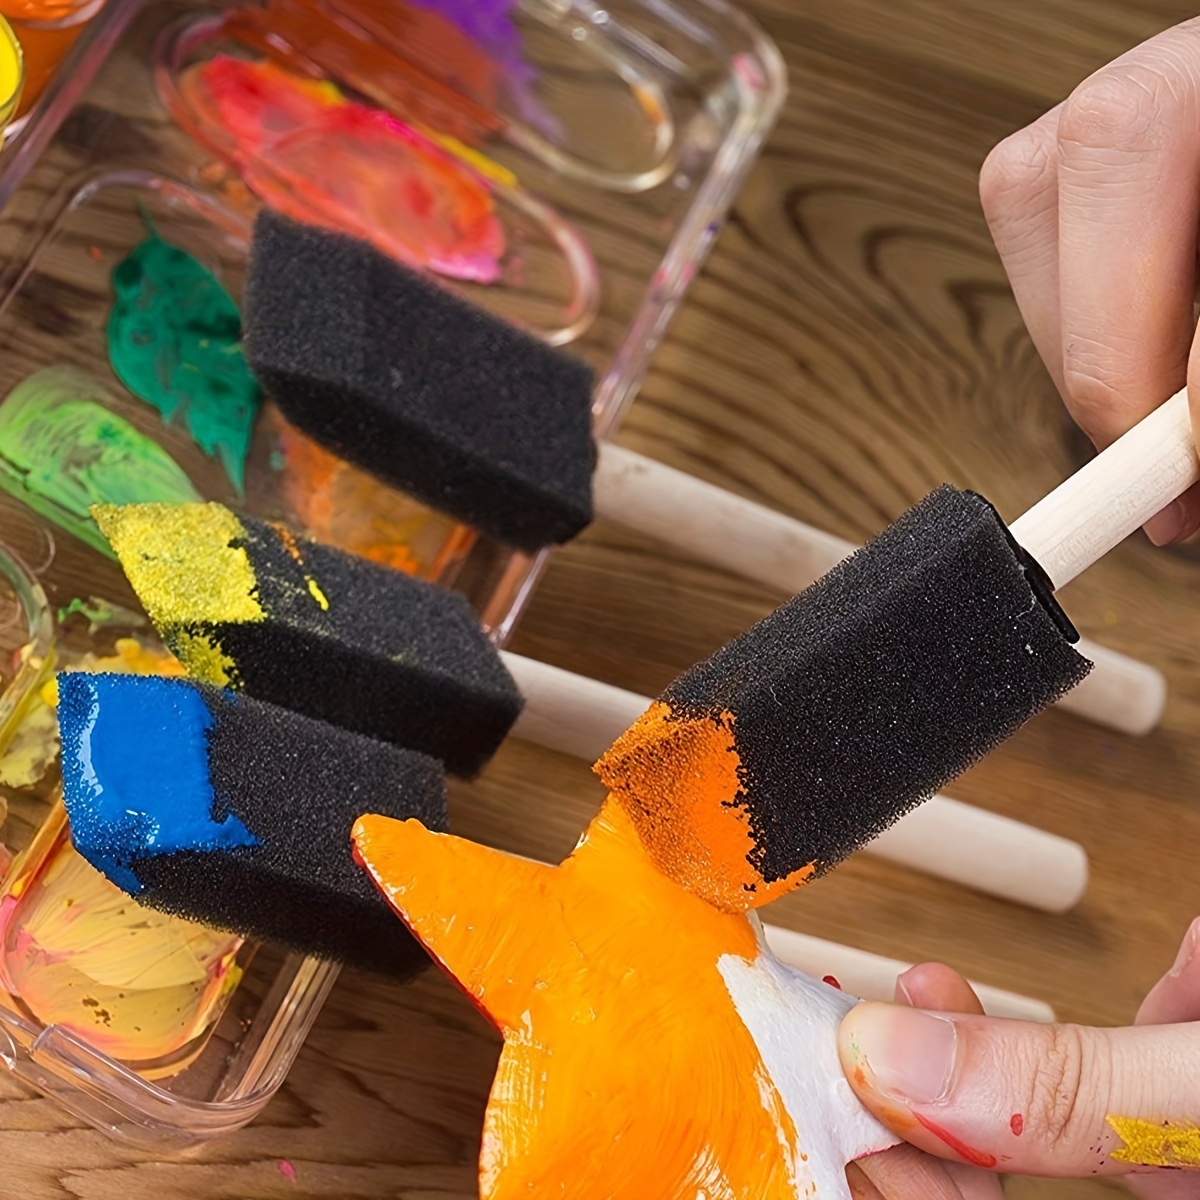 TEHAUX 10pcs Sponge Brush with Wooden Handle Wooden Handle Paint Pen Sponge  Brushes for Painting Sponge Paint Brush Paint Sponges Craft Sponges Paint